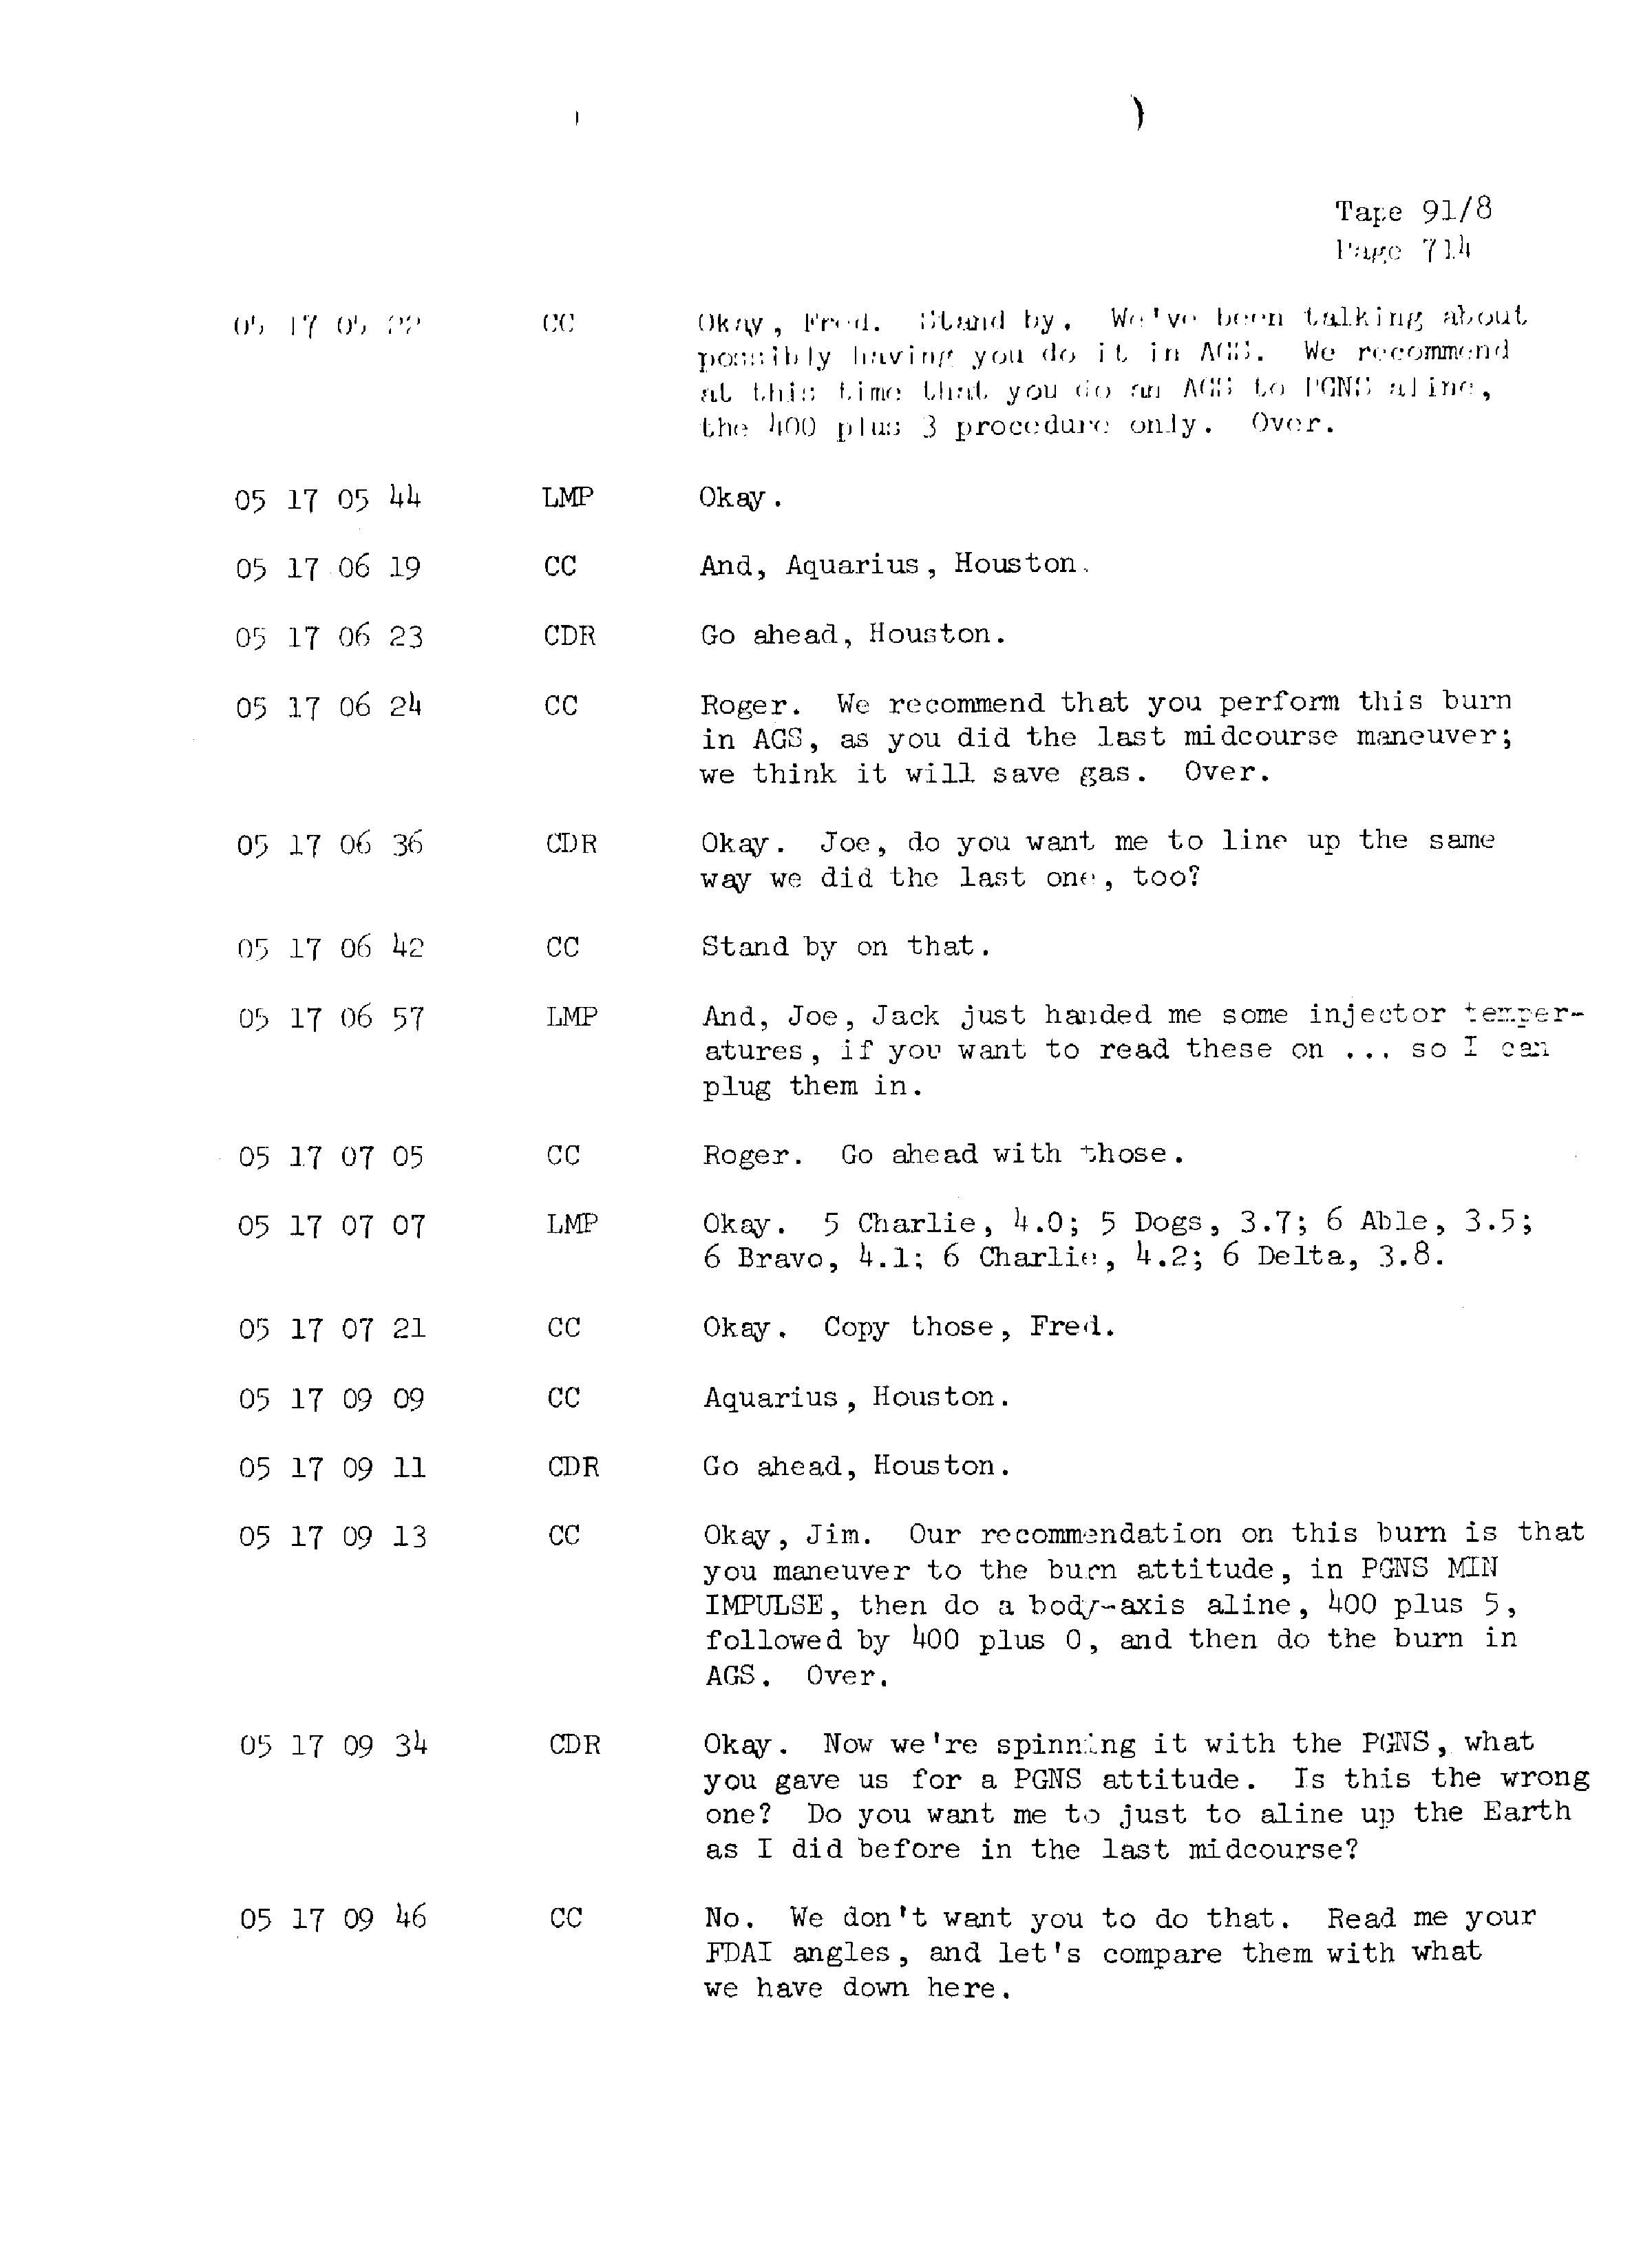 Page 721 of Apollo 13’s original transcript